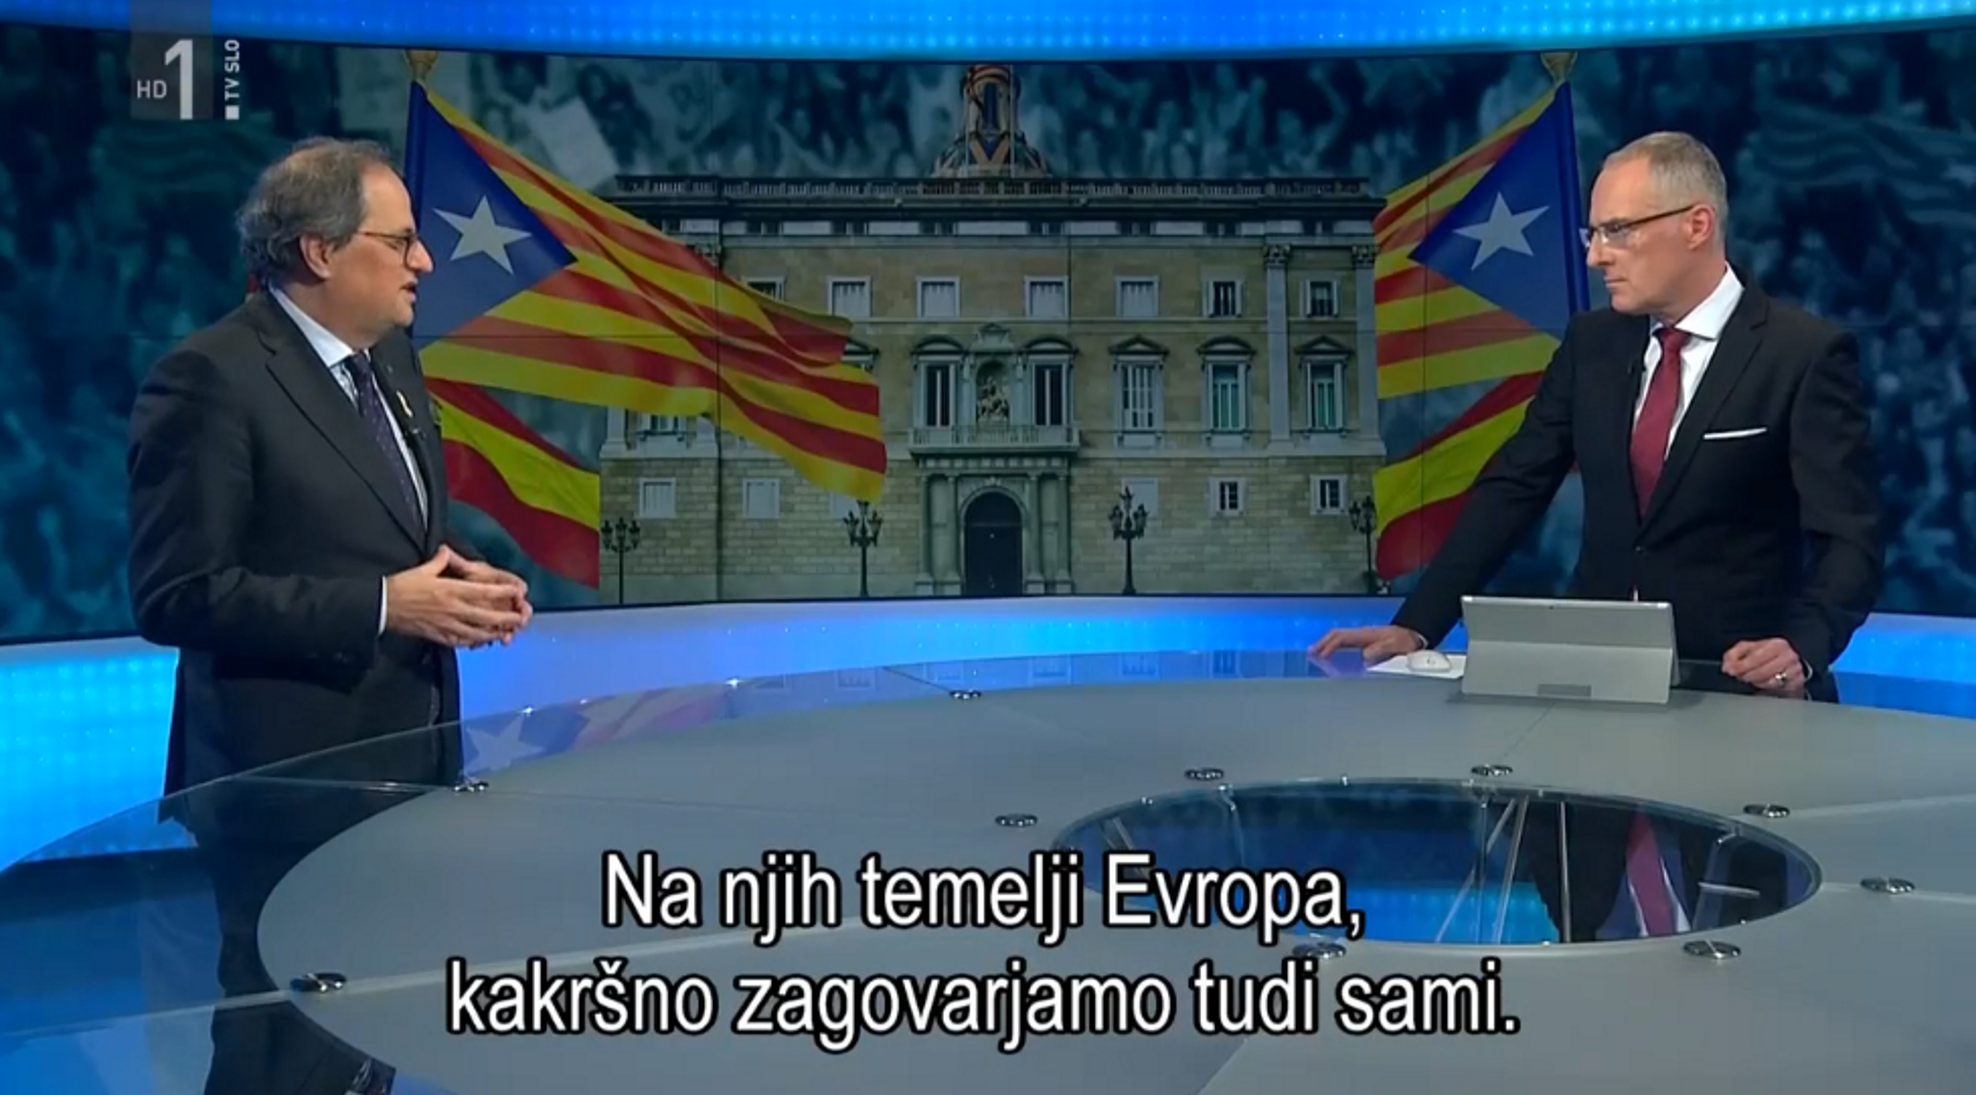 El presentador de la televisión eslovena entrevista a Torra en catalán